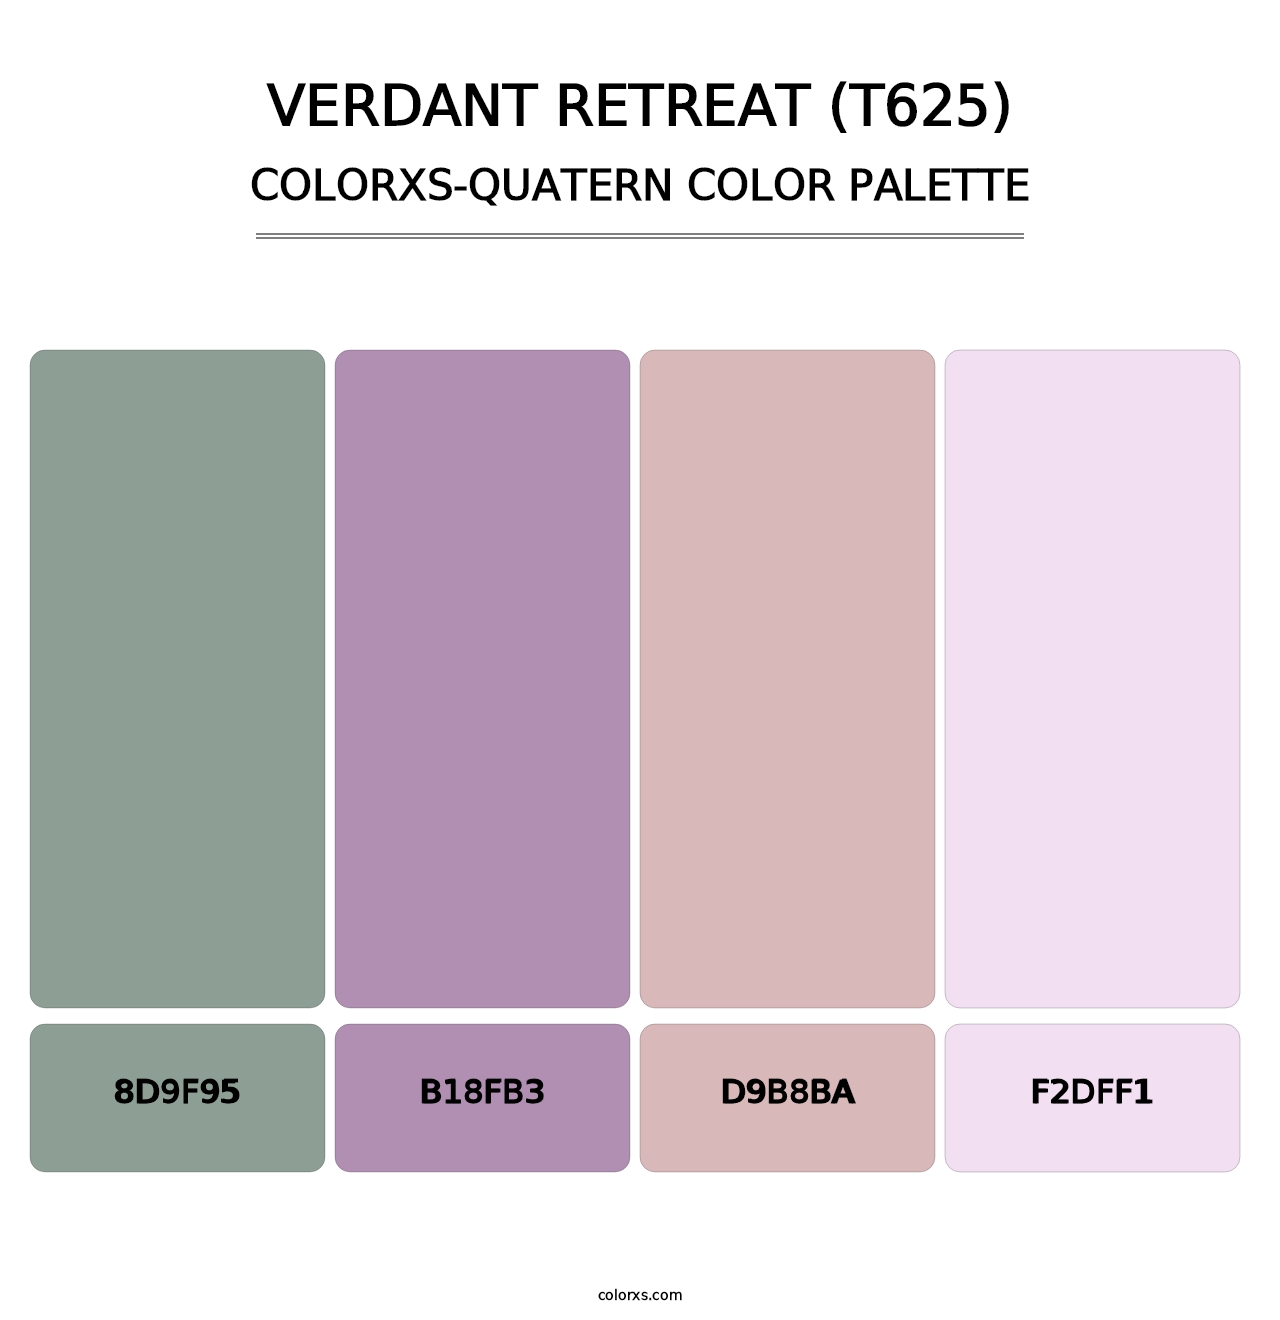 Verdant Retreat (T625) - Colorxs Quatern Palette